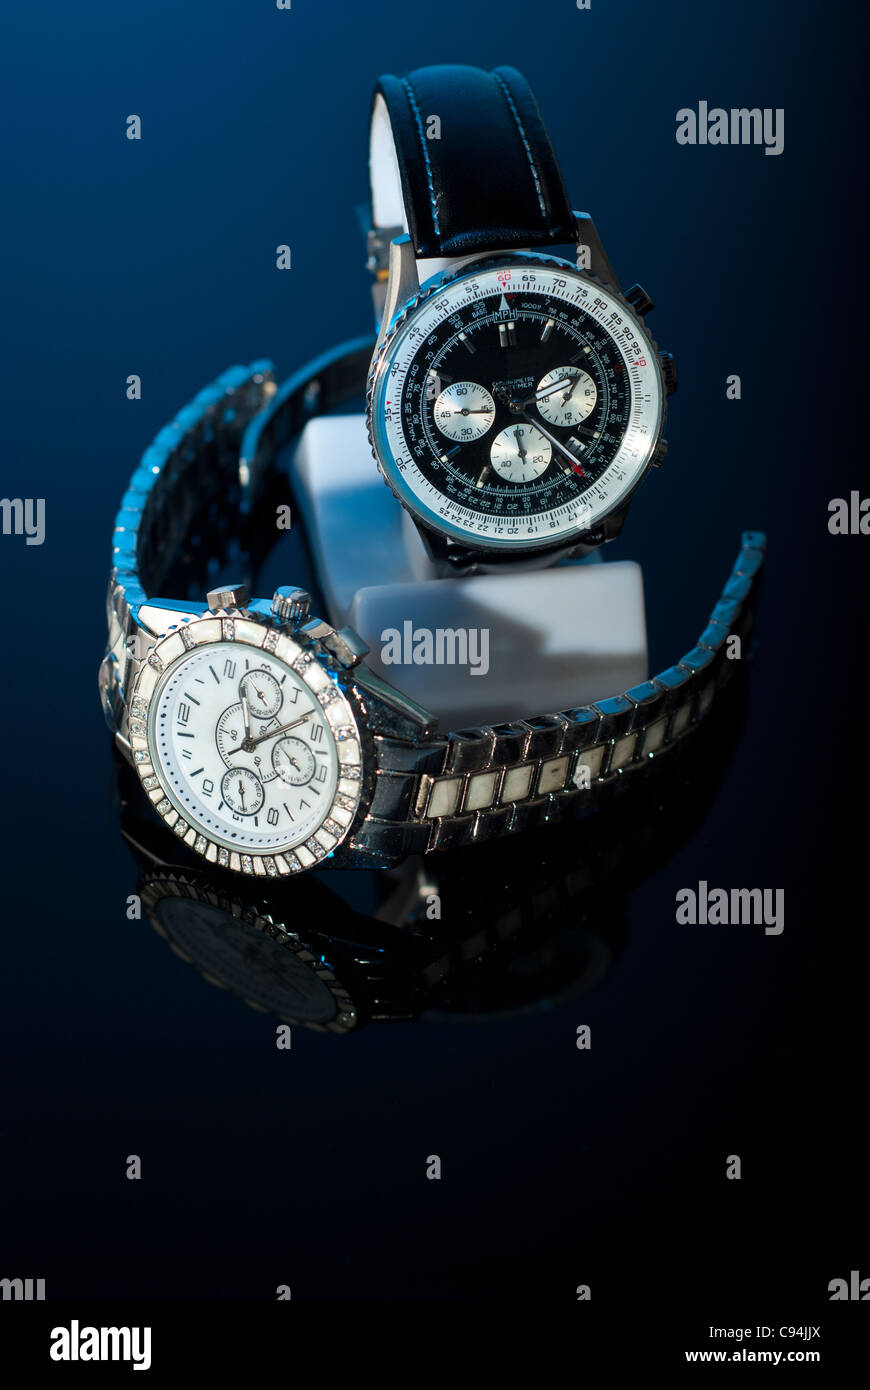 Zwei elegante Uhren für Womans und mans auf schwarzem Hintergrund mit blauem Licht Stockfoto